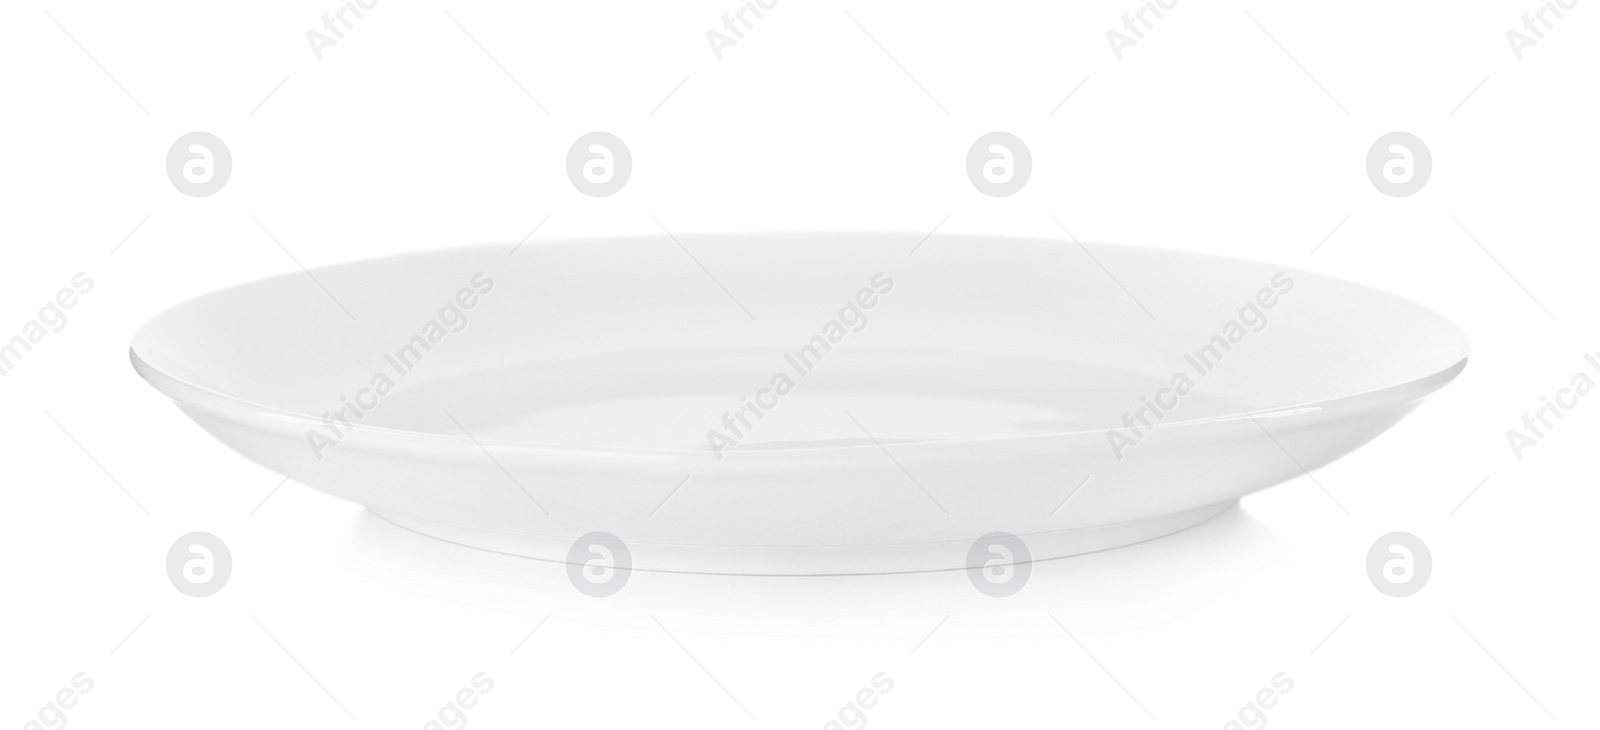 Photo of Stylish empty ceramic plate isolated on white